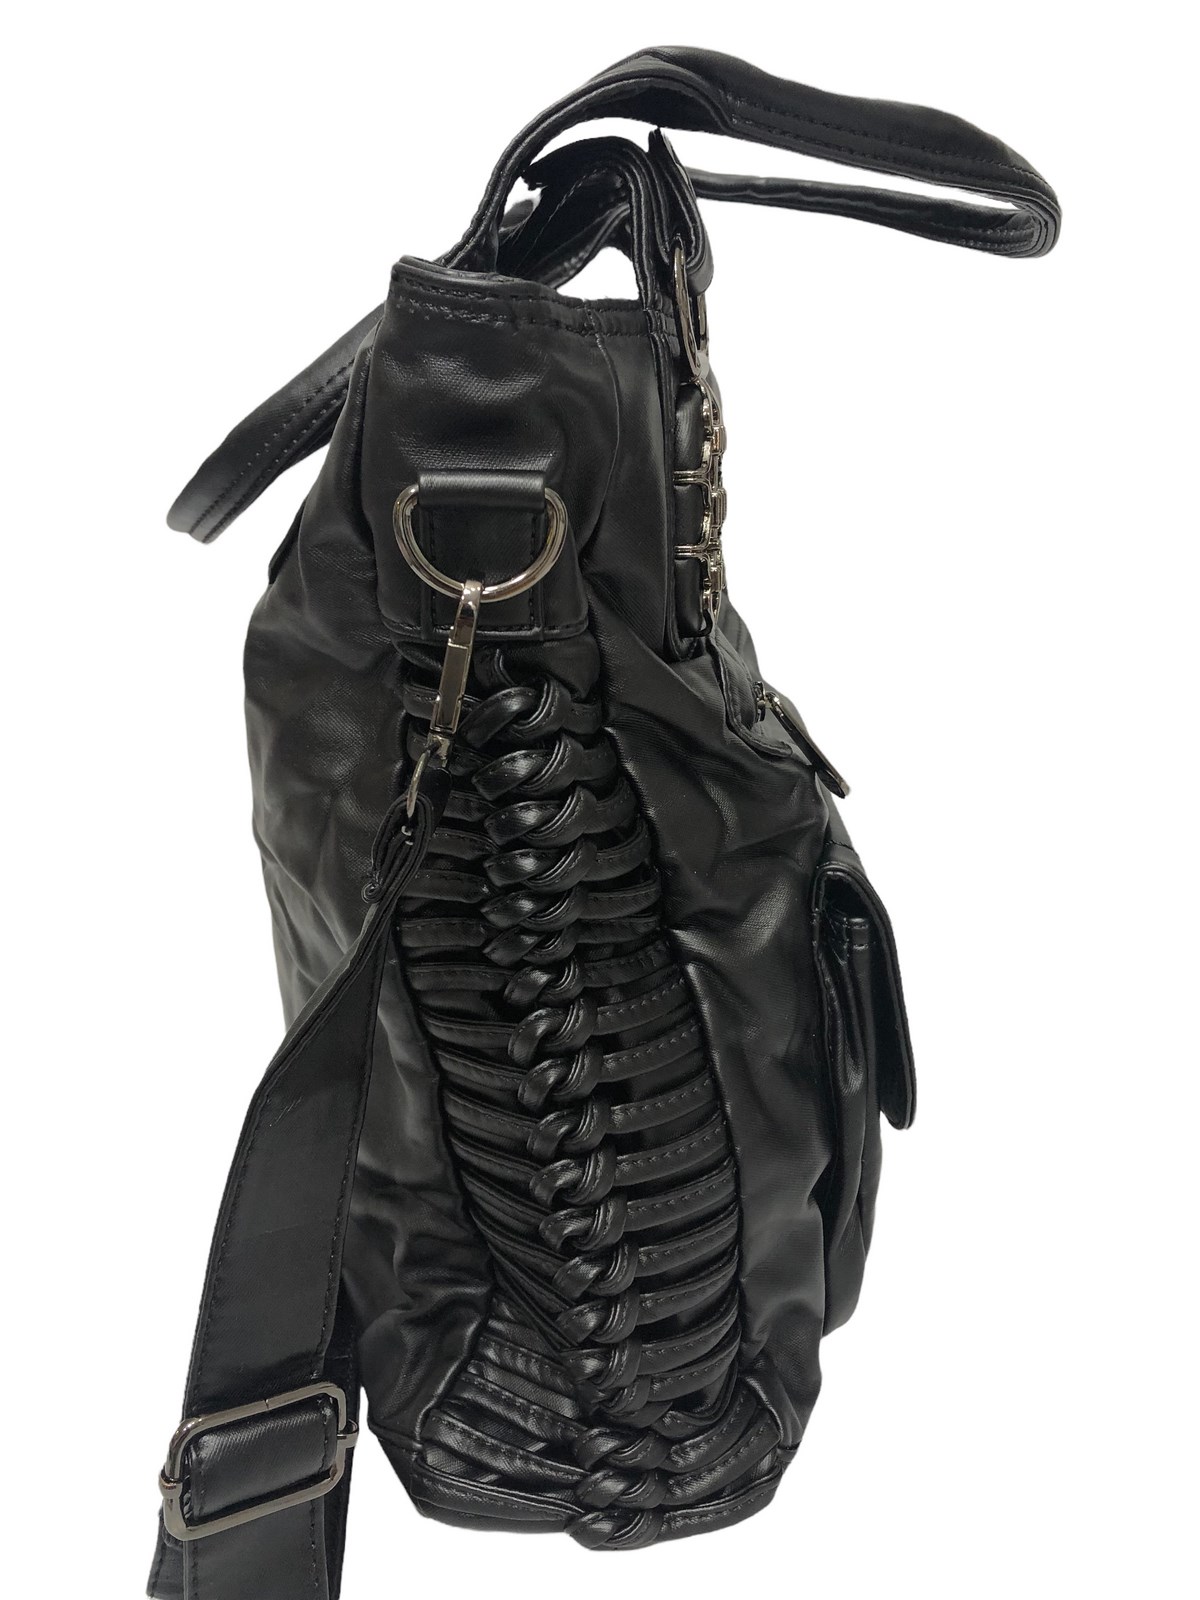 Charo Garcia Charo Garcia Siyah Bayan kol çantası eskitme yıkanmış deri  Yumuşak ebat 32cm32 | elizabell.com.tr